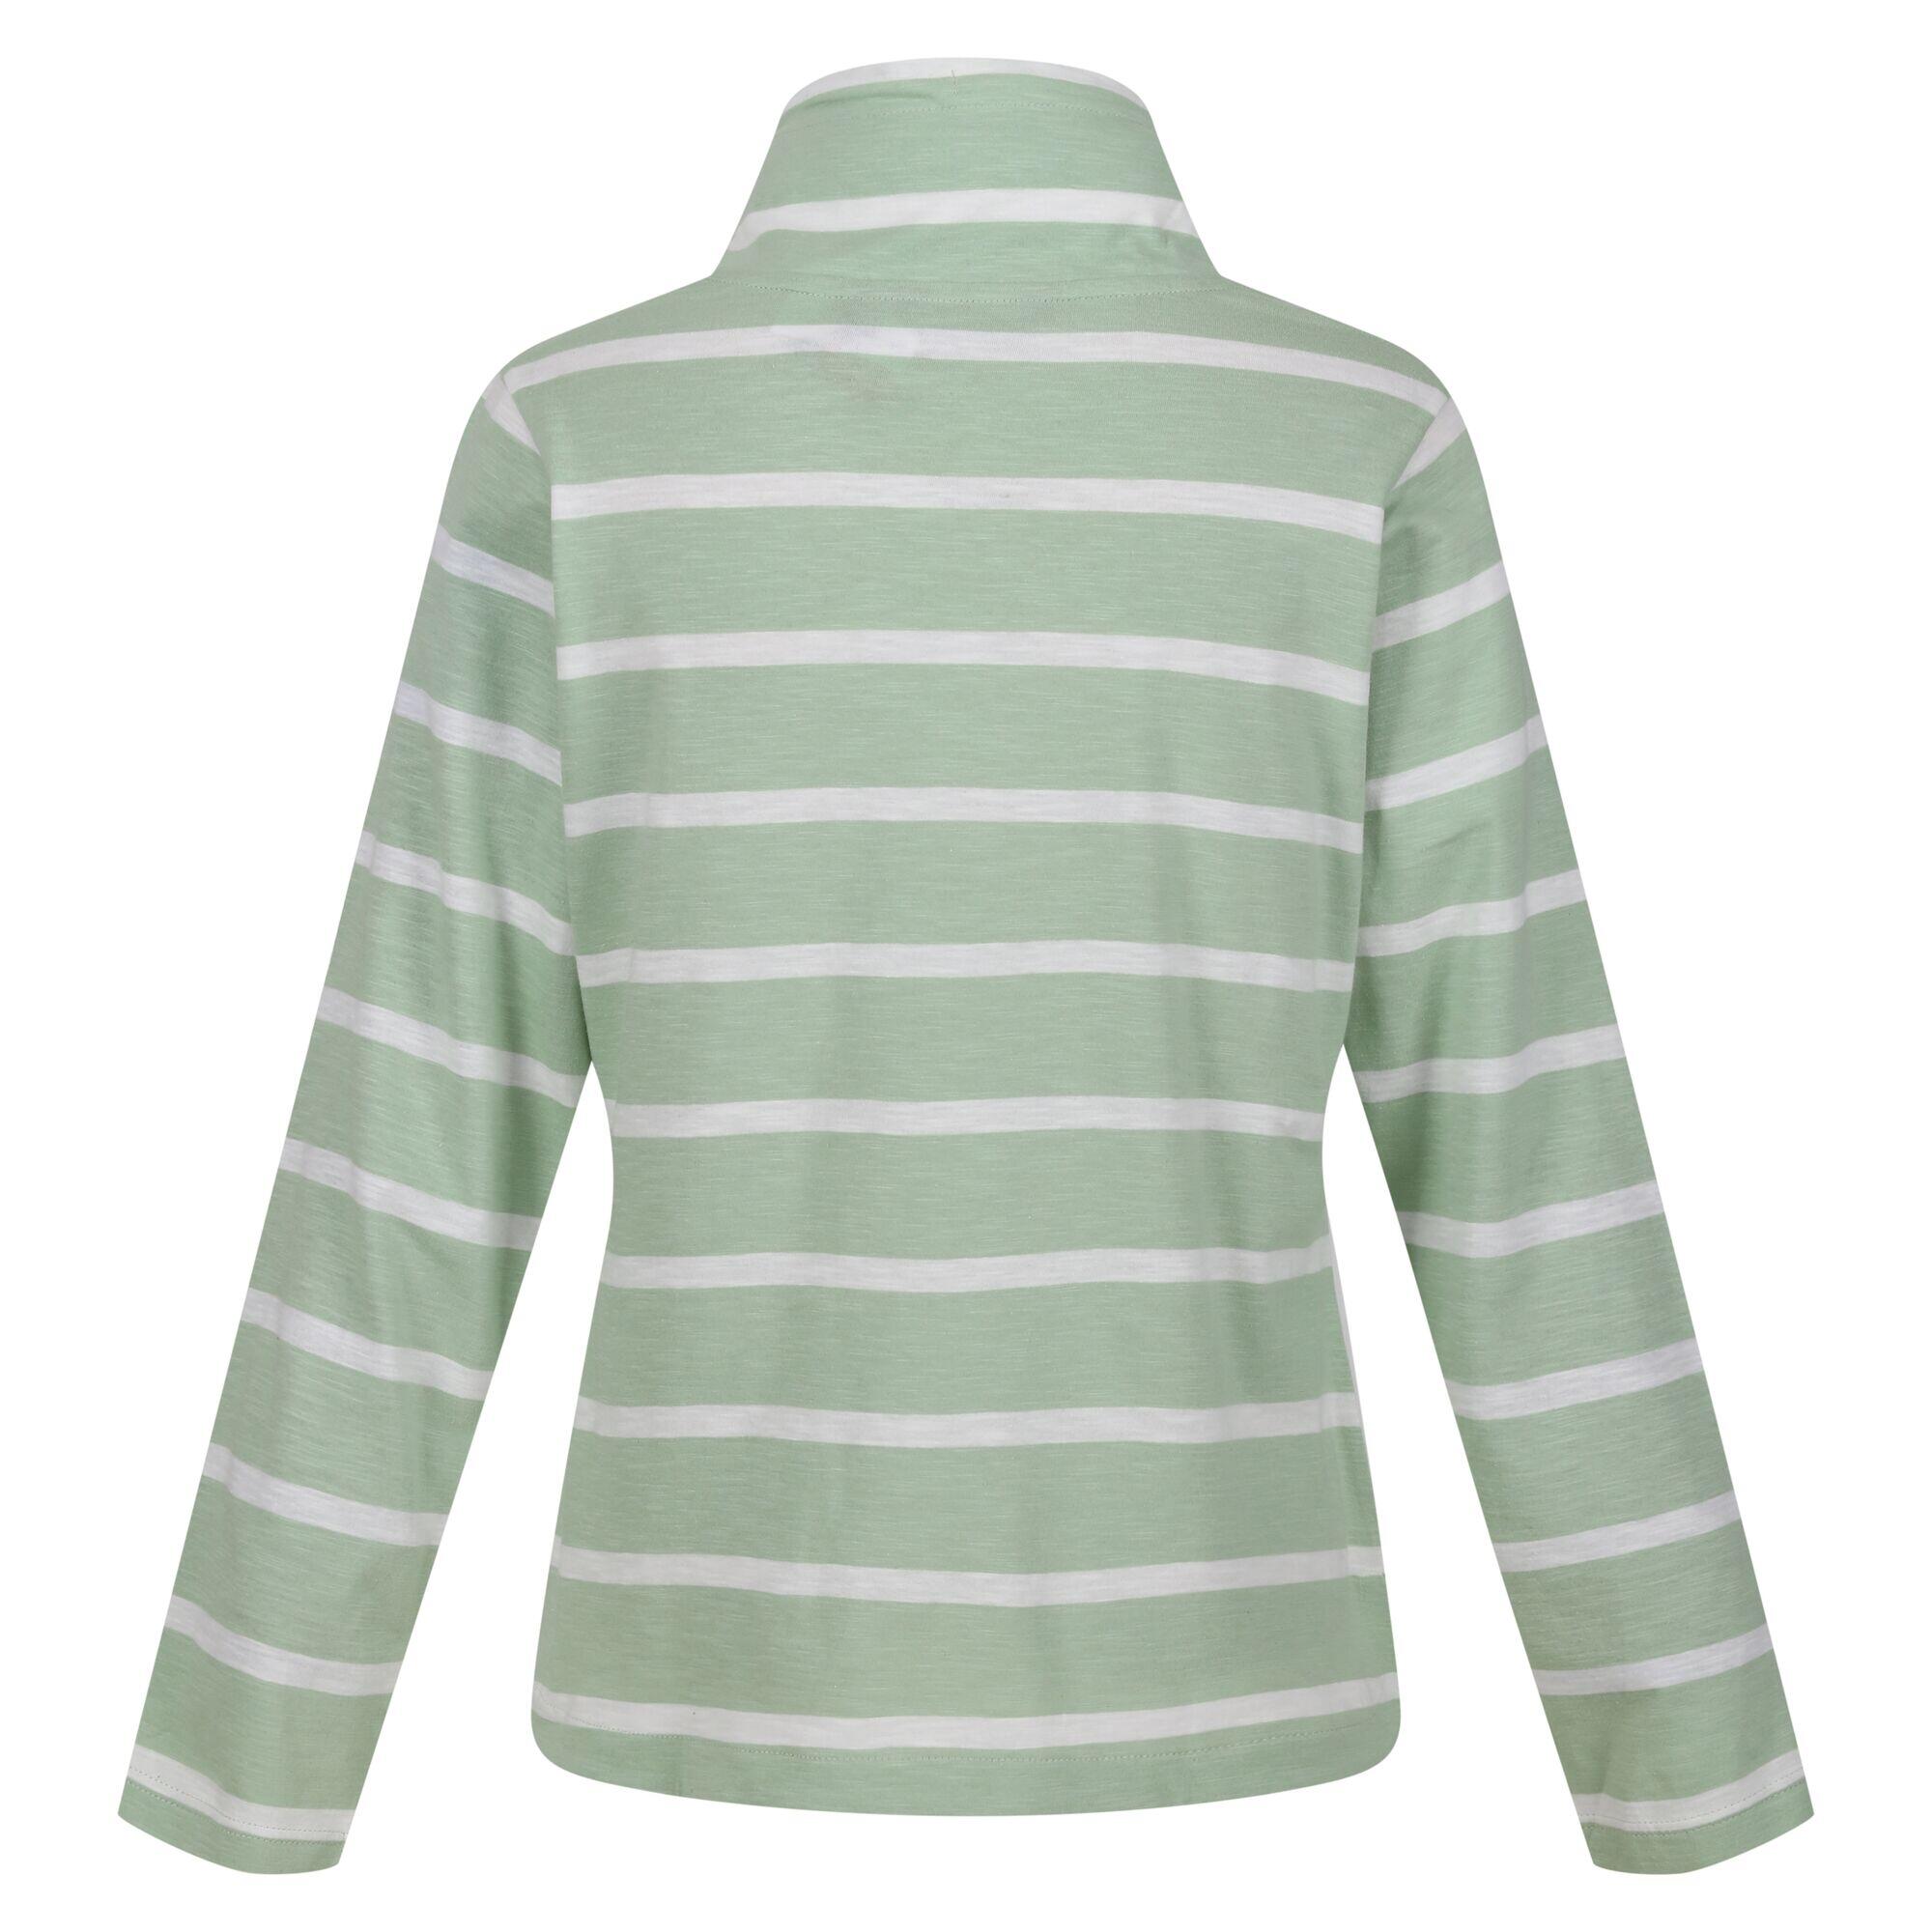 Womens/Ladies Helvine Striped Sweatshirt (Quiet Green/White) 2/5